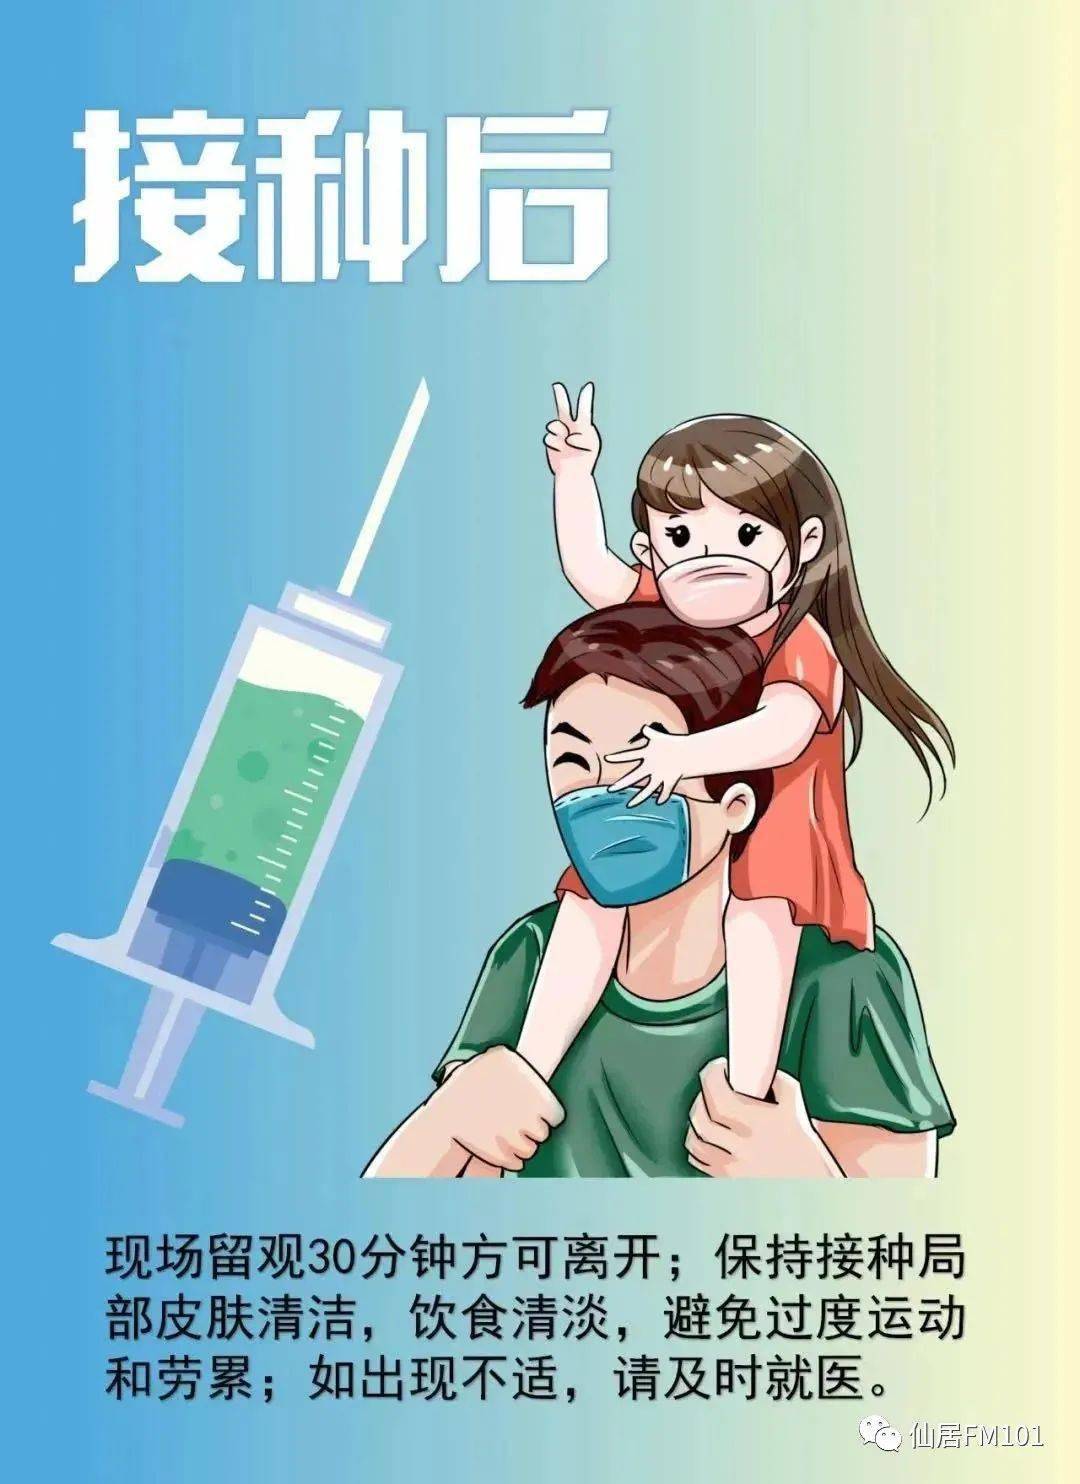 新冠疫苗宣传漫画图片